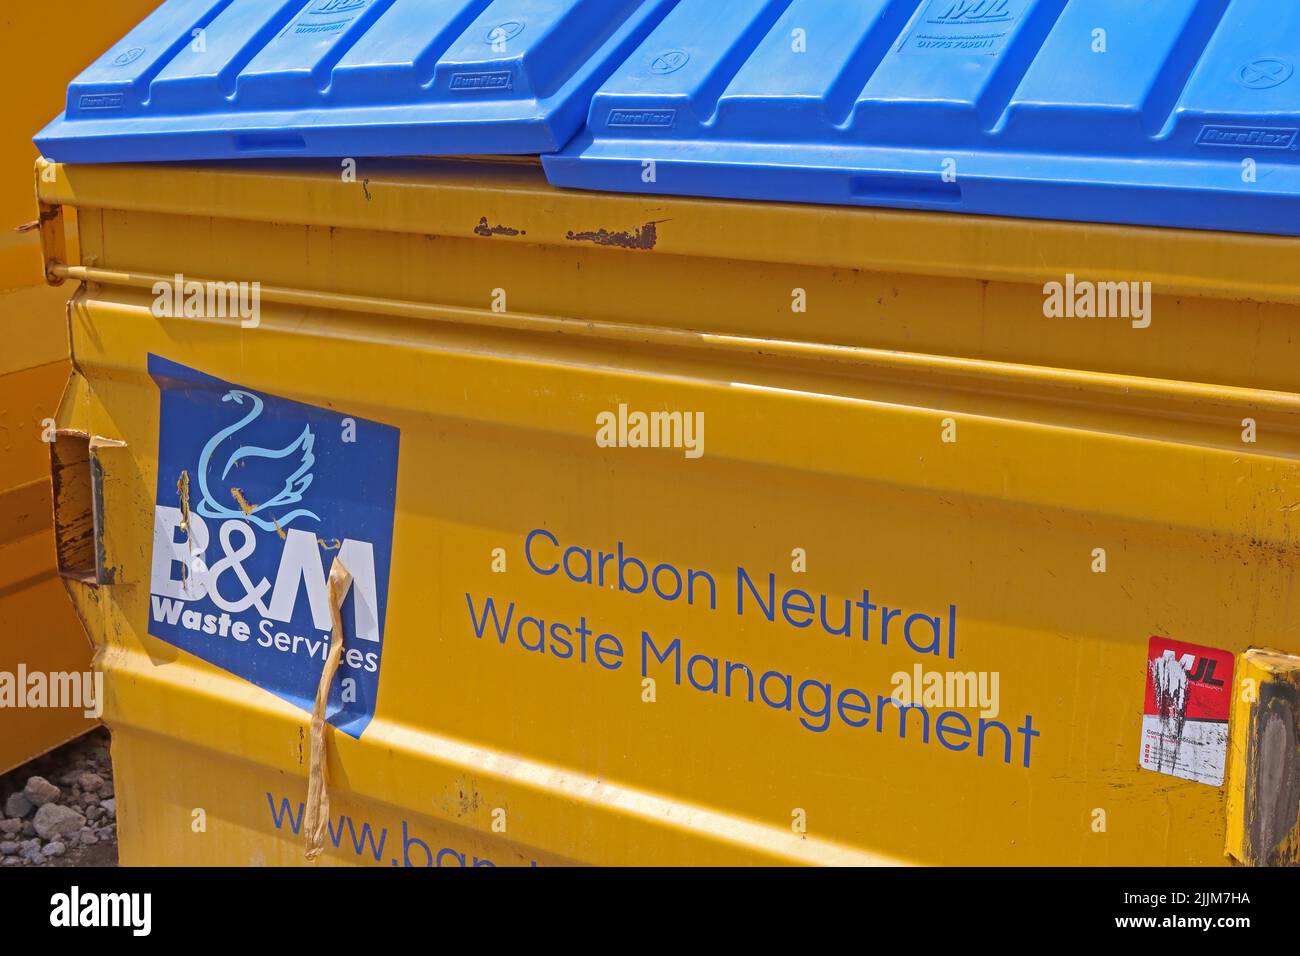 B&M Waste Services – Carbon Neutral Waste Management skip. Können Unternehmen wirklich CO2-neutral sein? Stockfoto